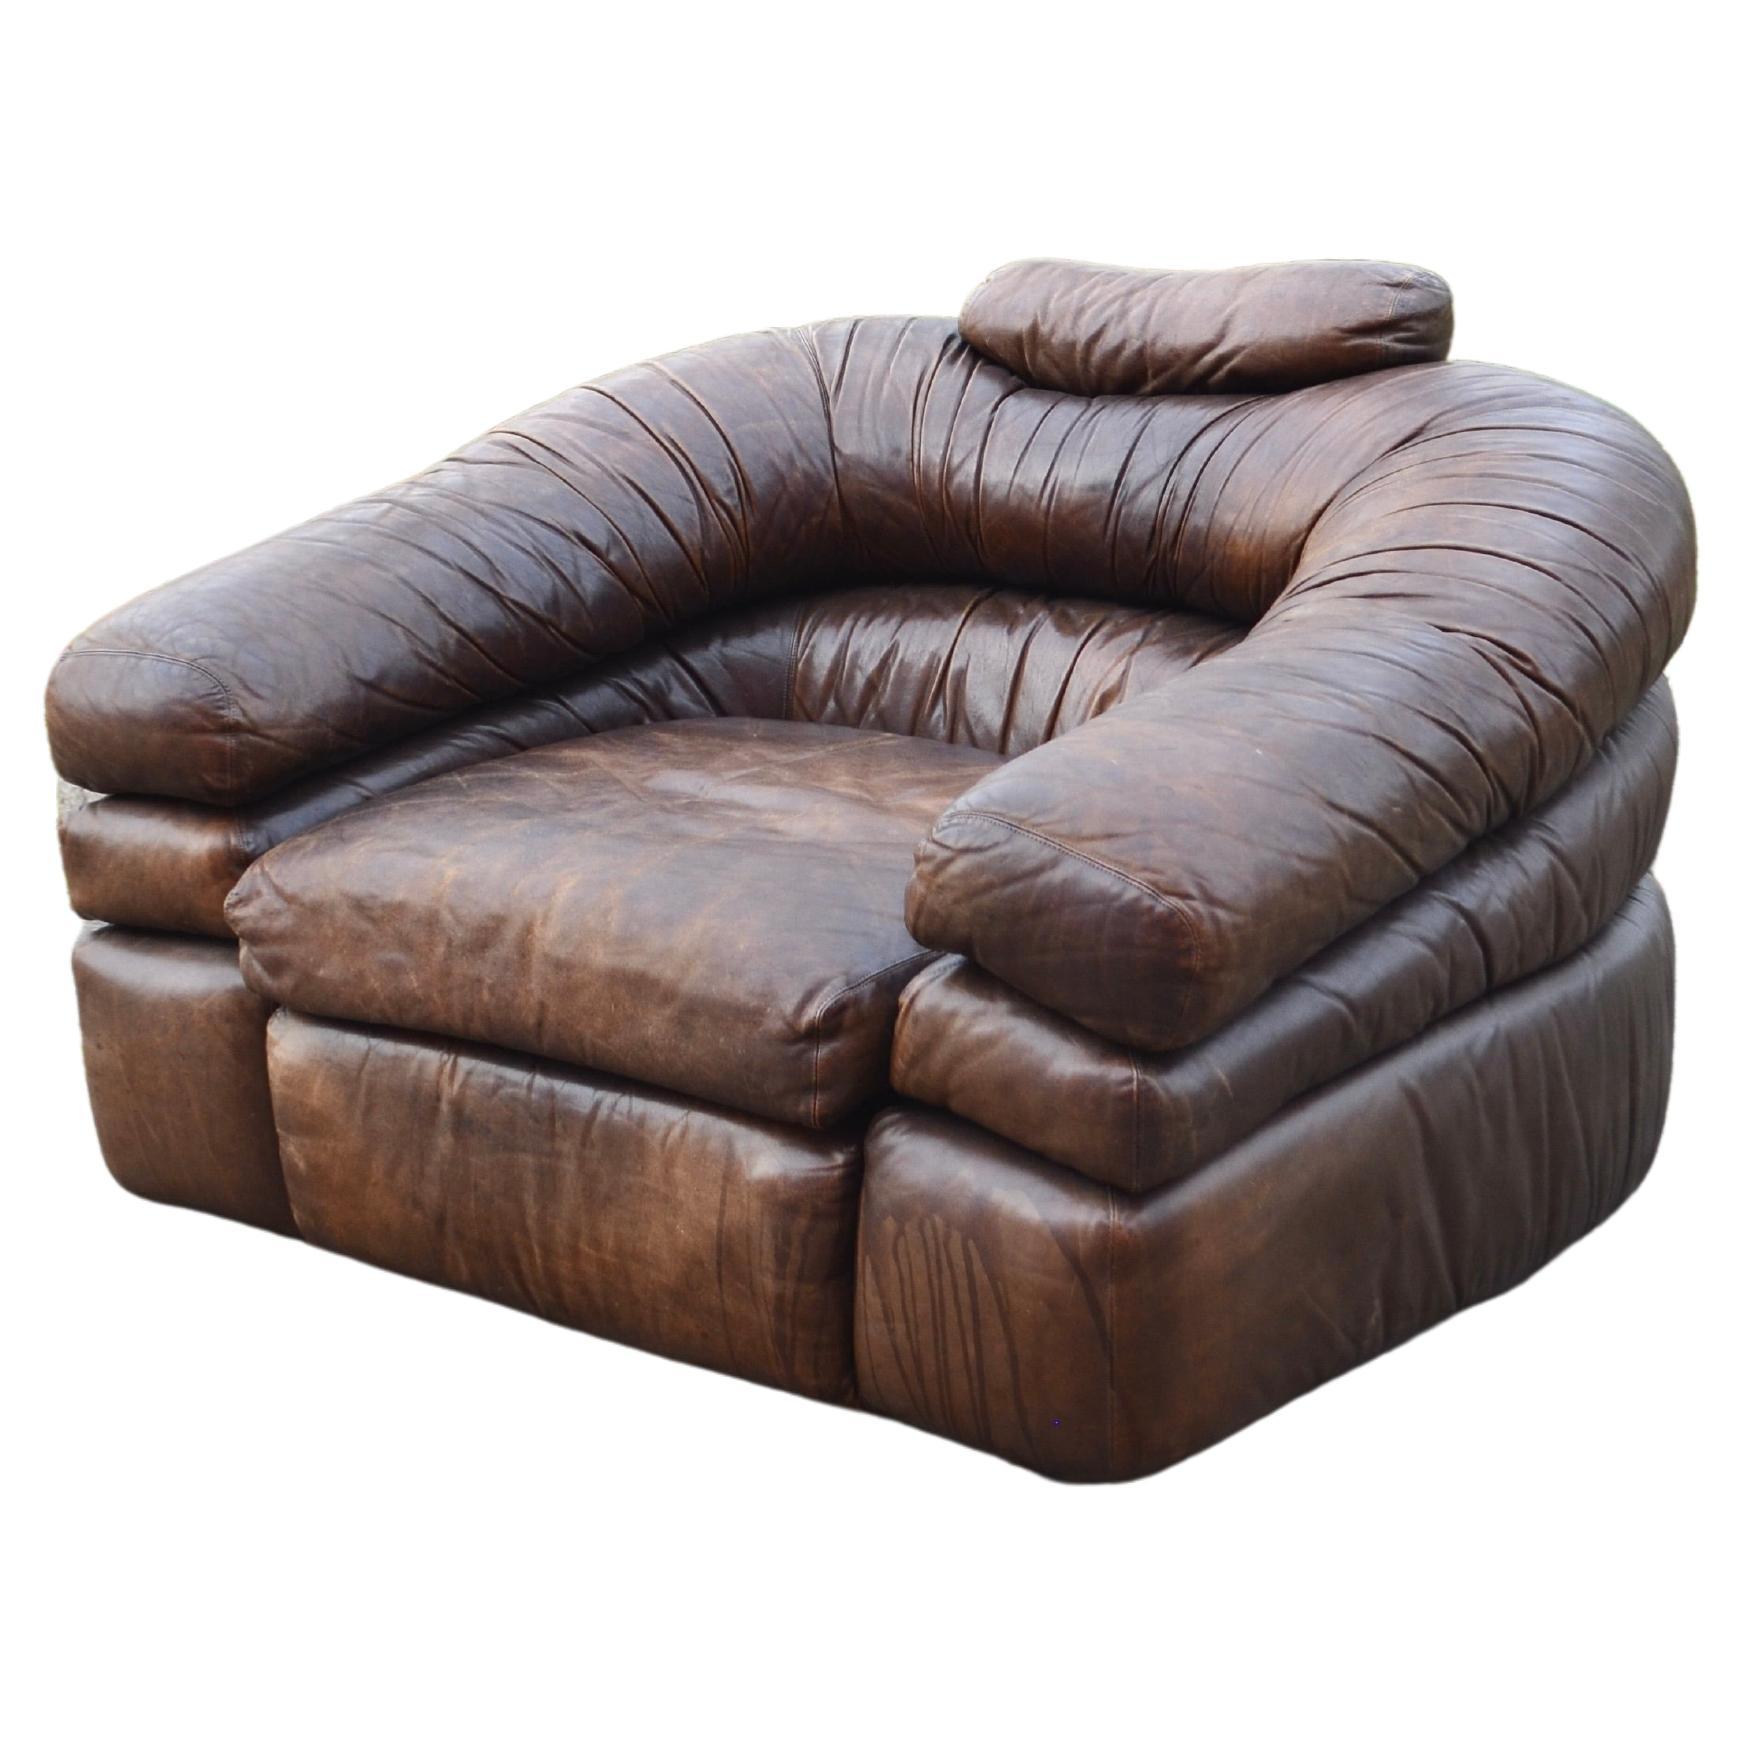 Zanotta Model Straccio De Pas, D'Urbino, Lomazzi Original Lounge Leather Chair